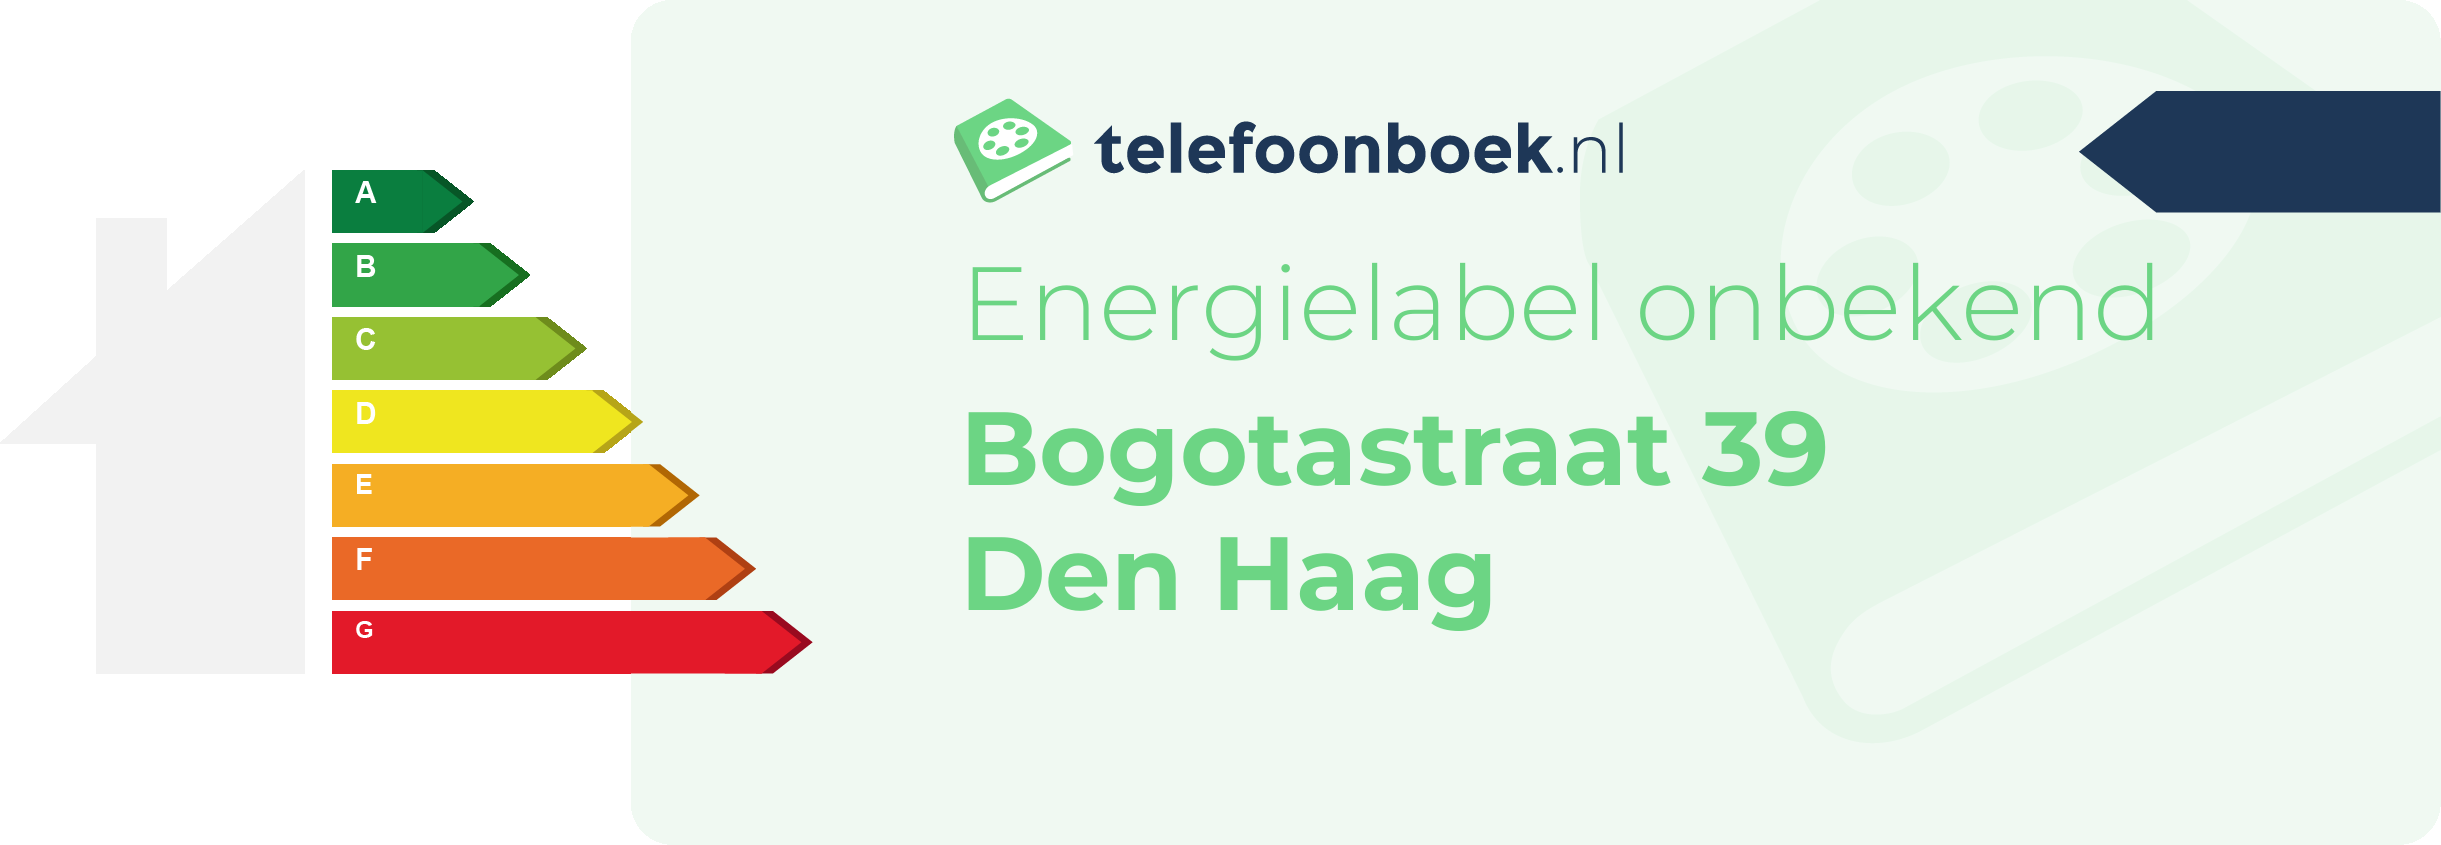 Energielabel Bogotastraat 39 Den Haag